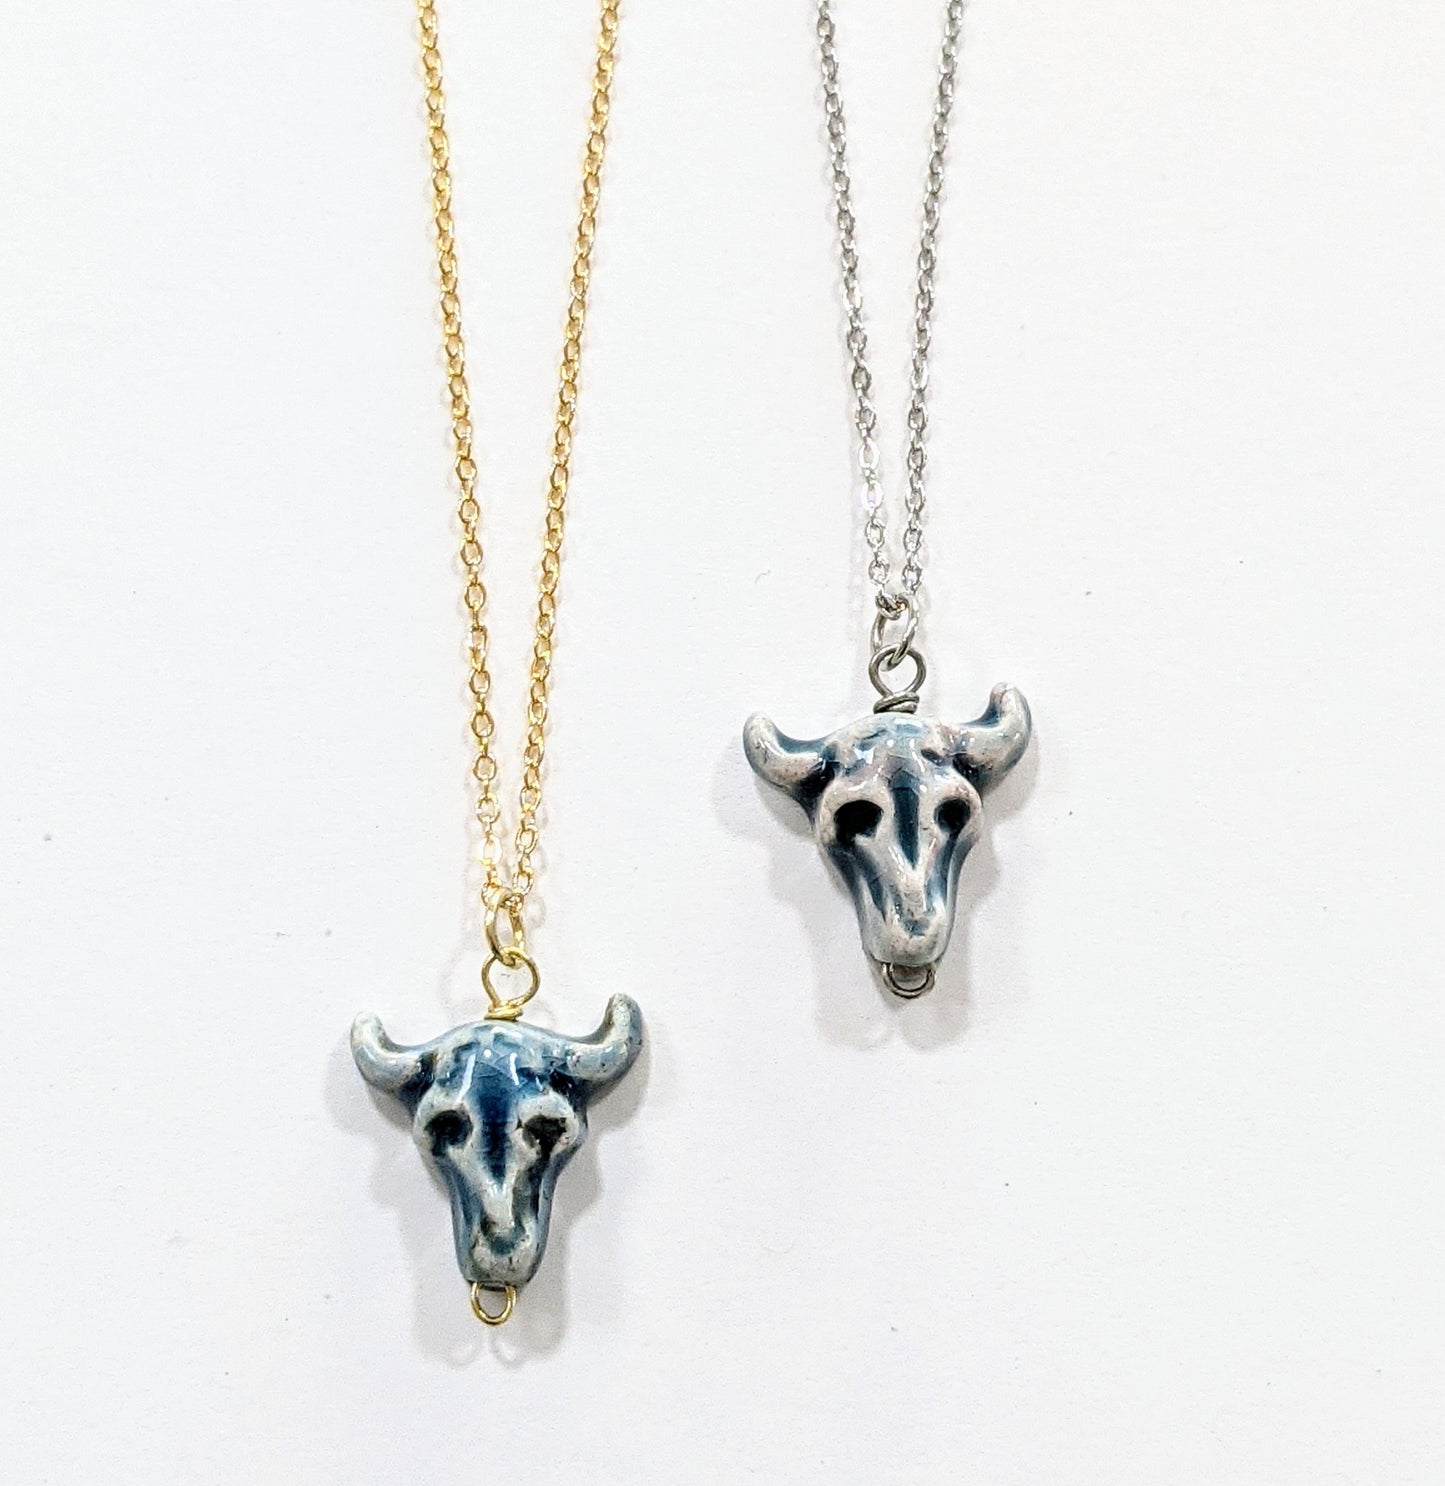 Blue steer skull charm handmade necklace